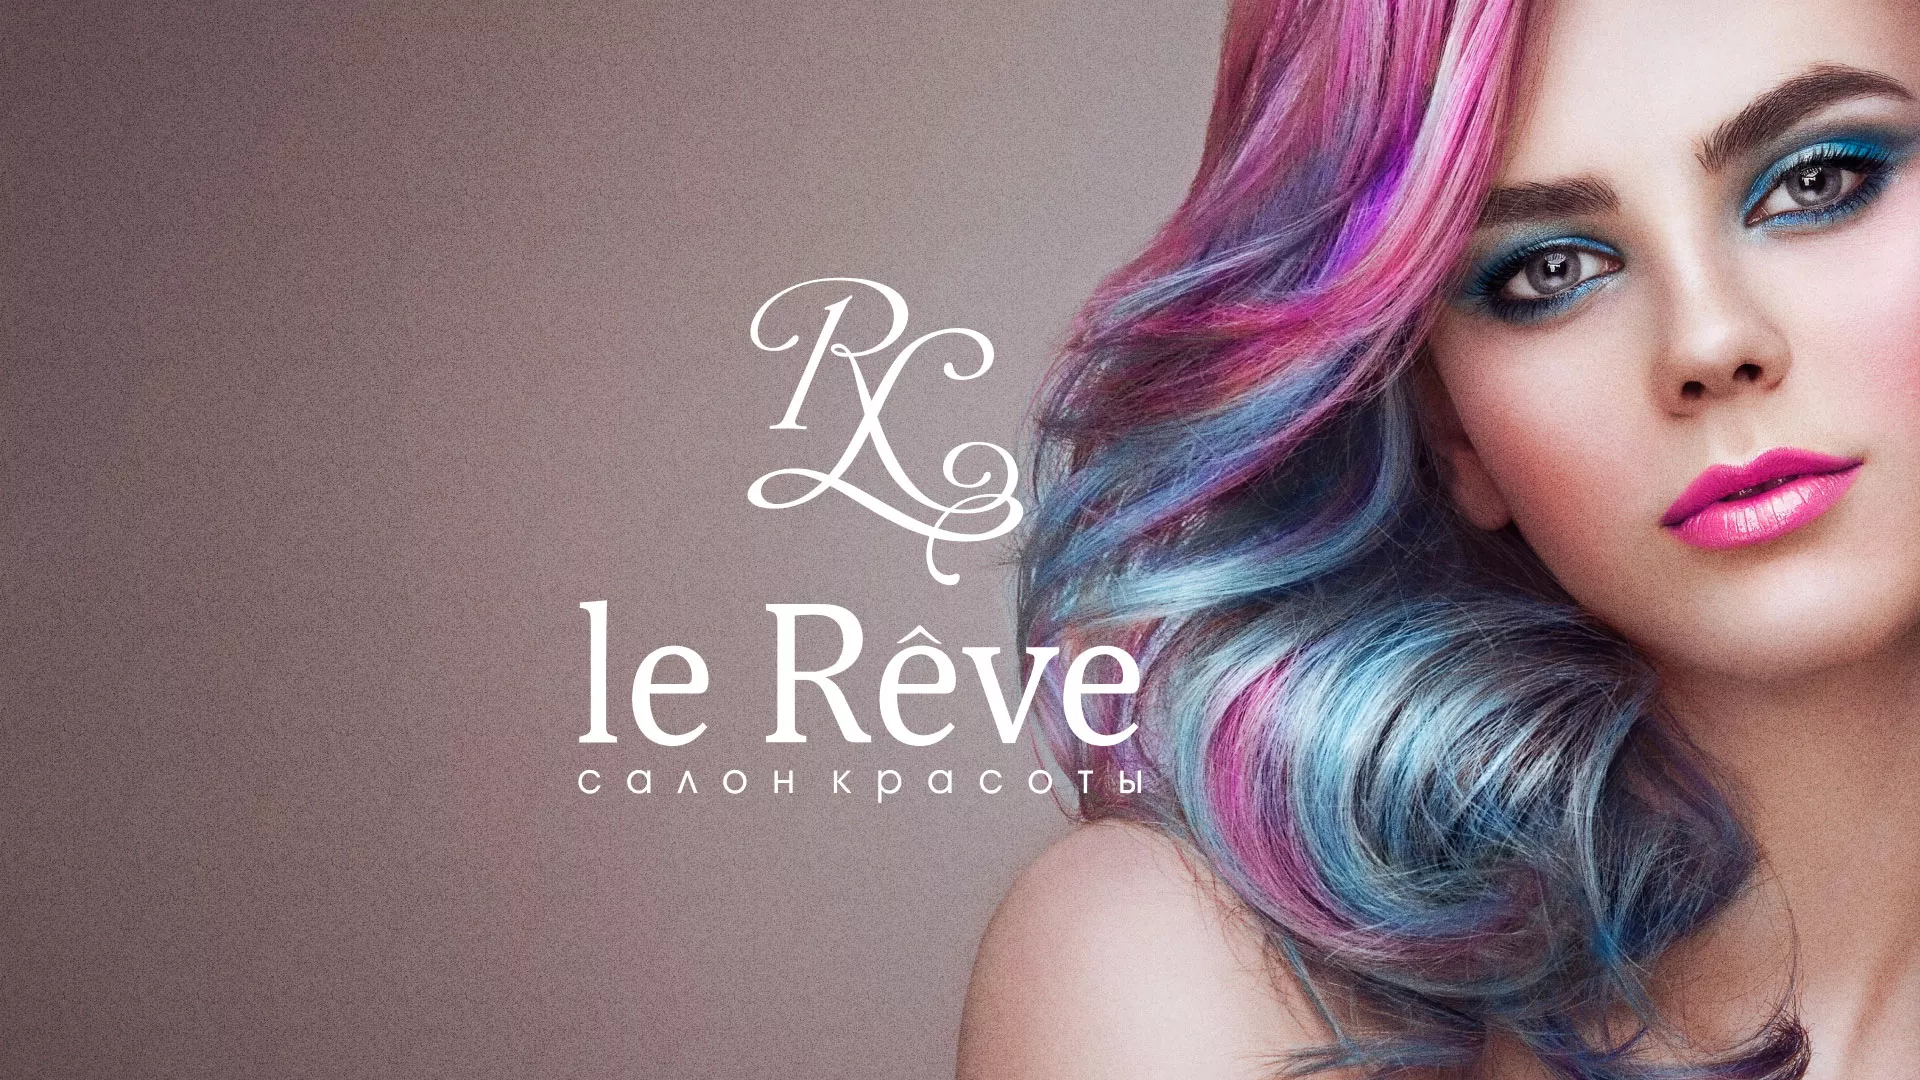 Создание сайта для салона красоты «Le Reve» в Весьегонске